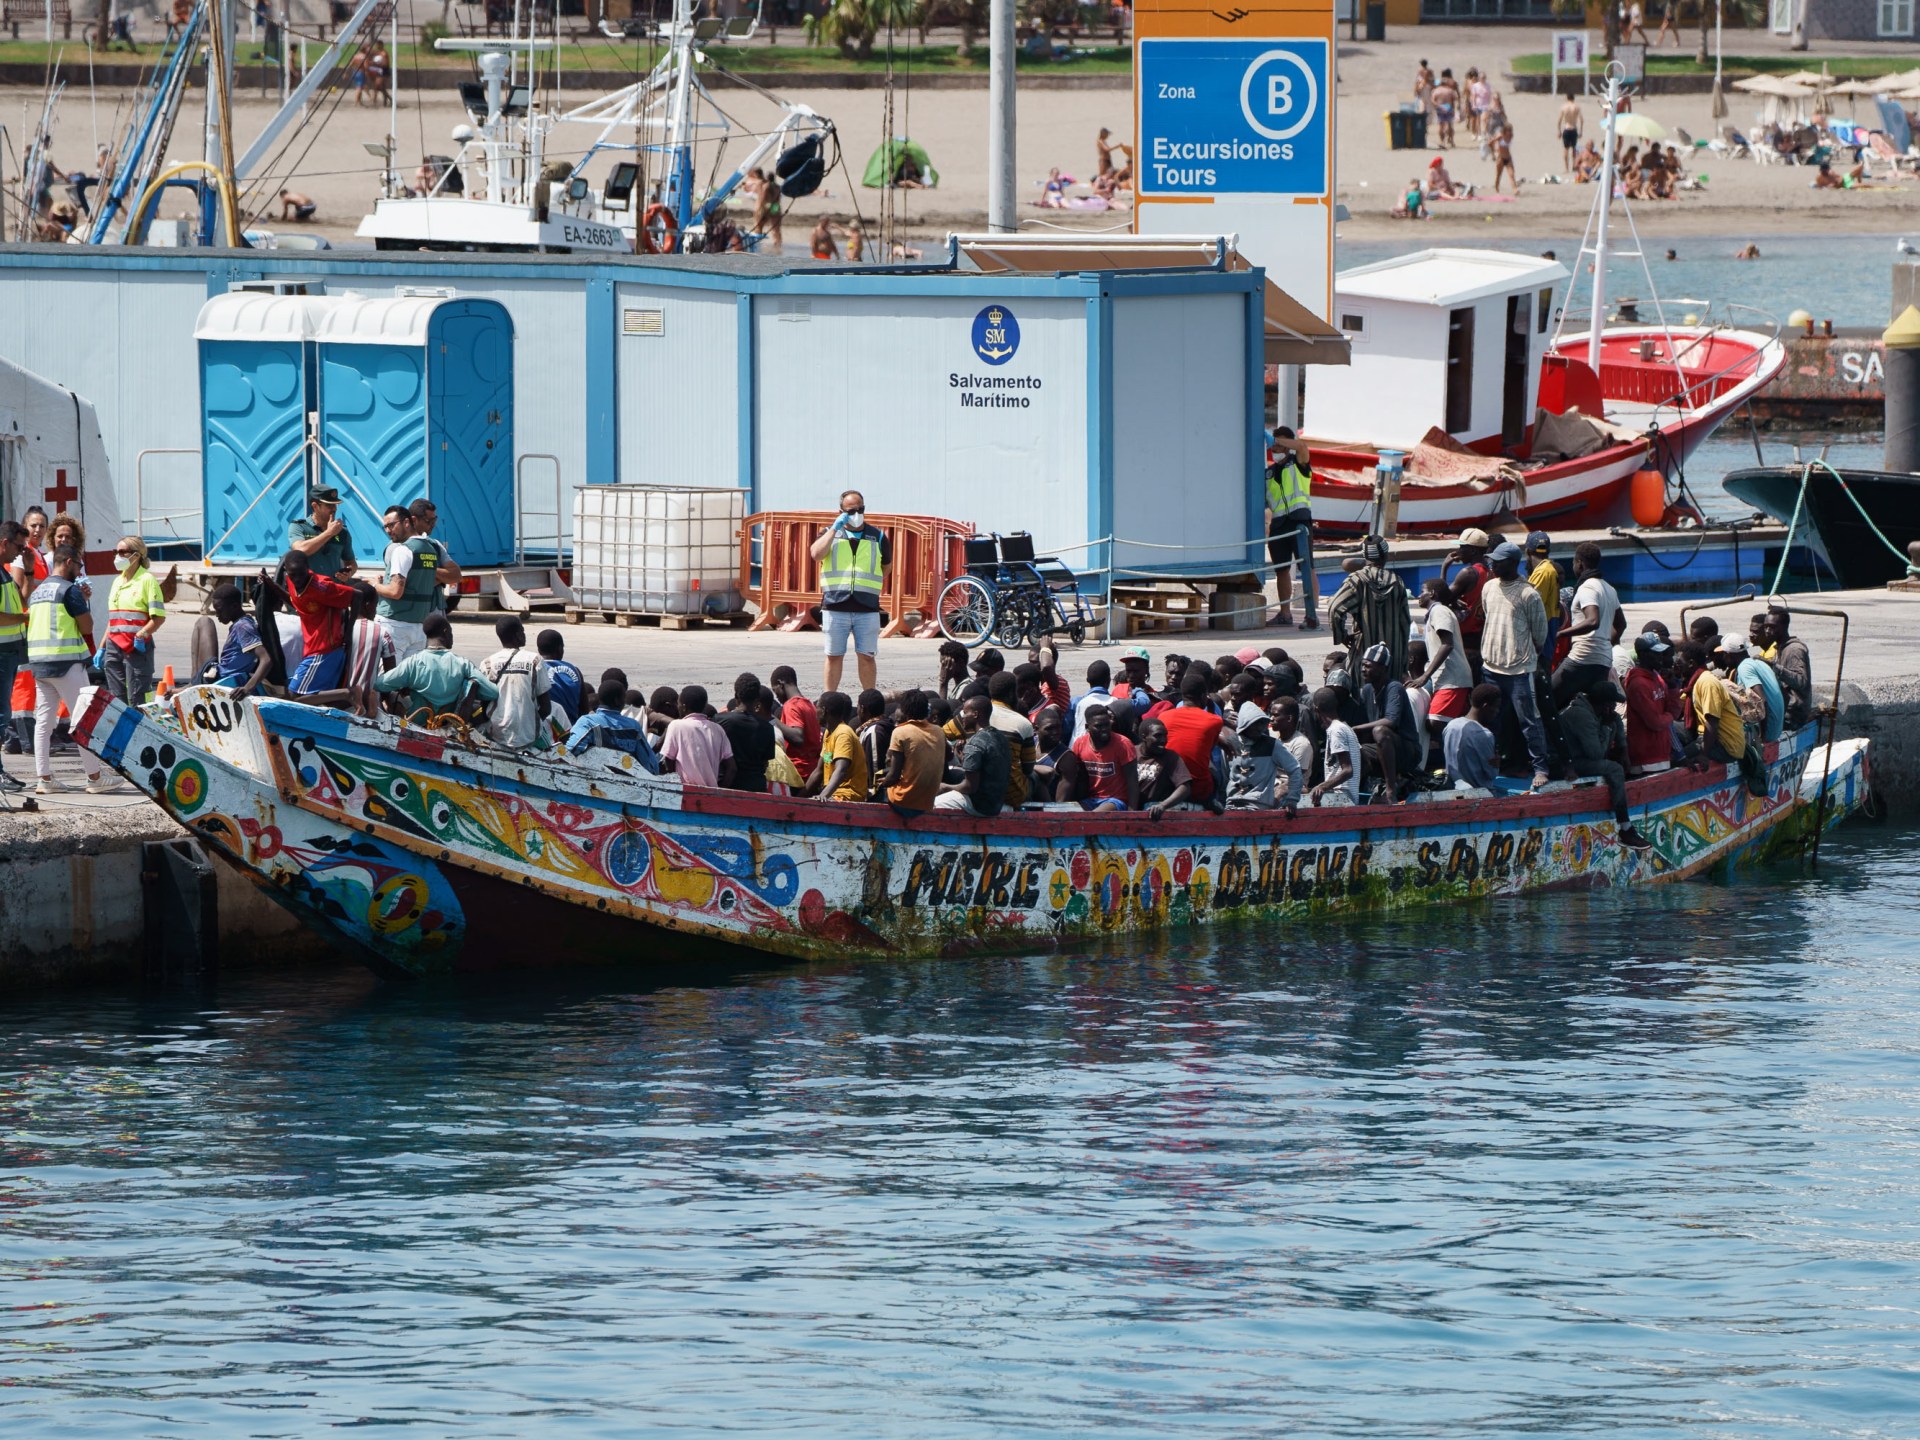 Satu tewas dalam perjalanan perahu berbahaya untuk mencapai Spanyol dari Afrika |  Berita Migrasi